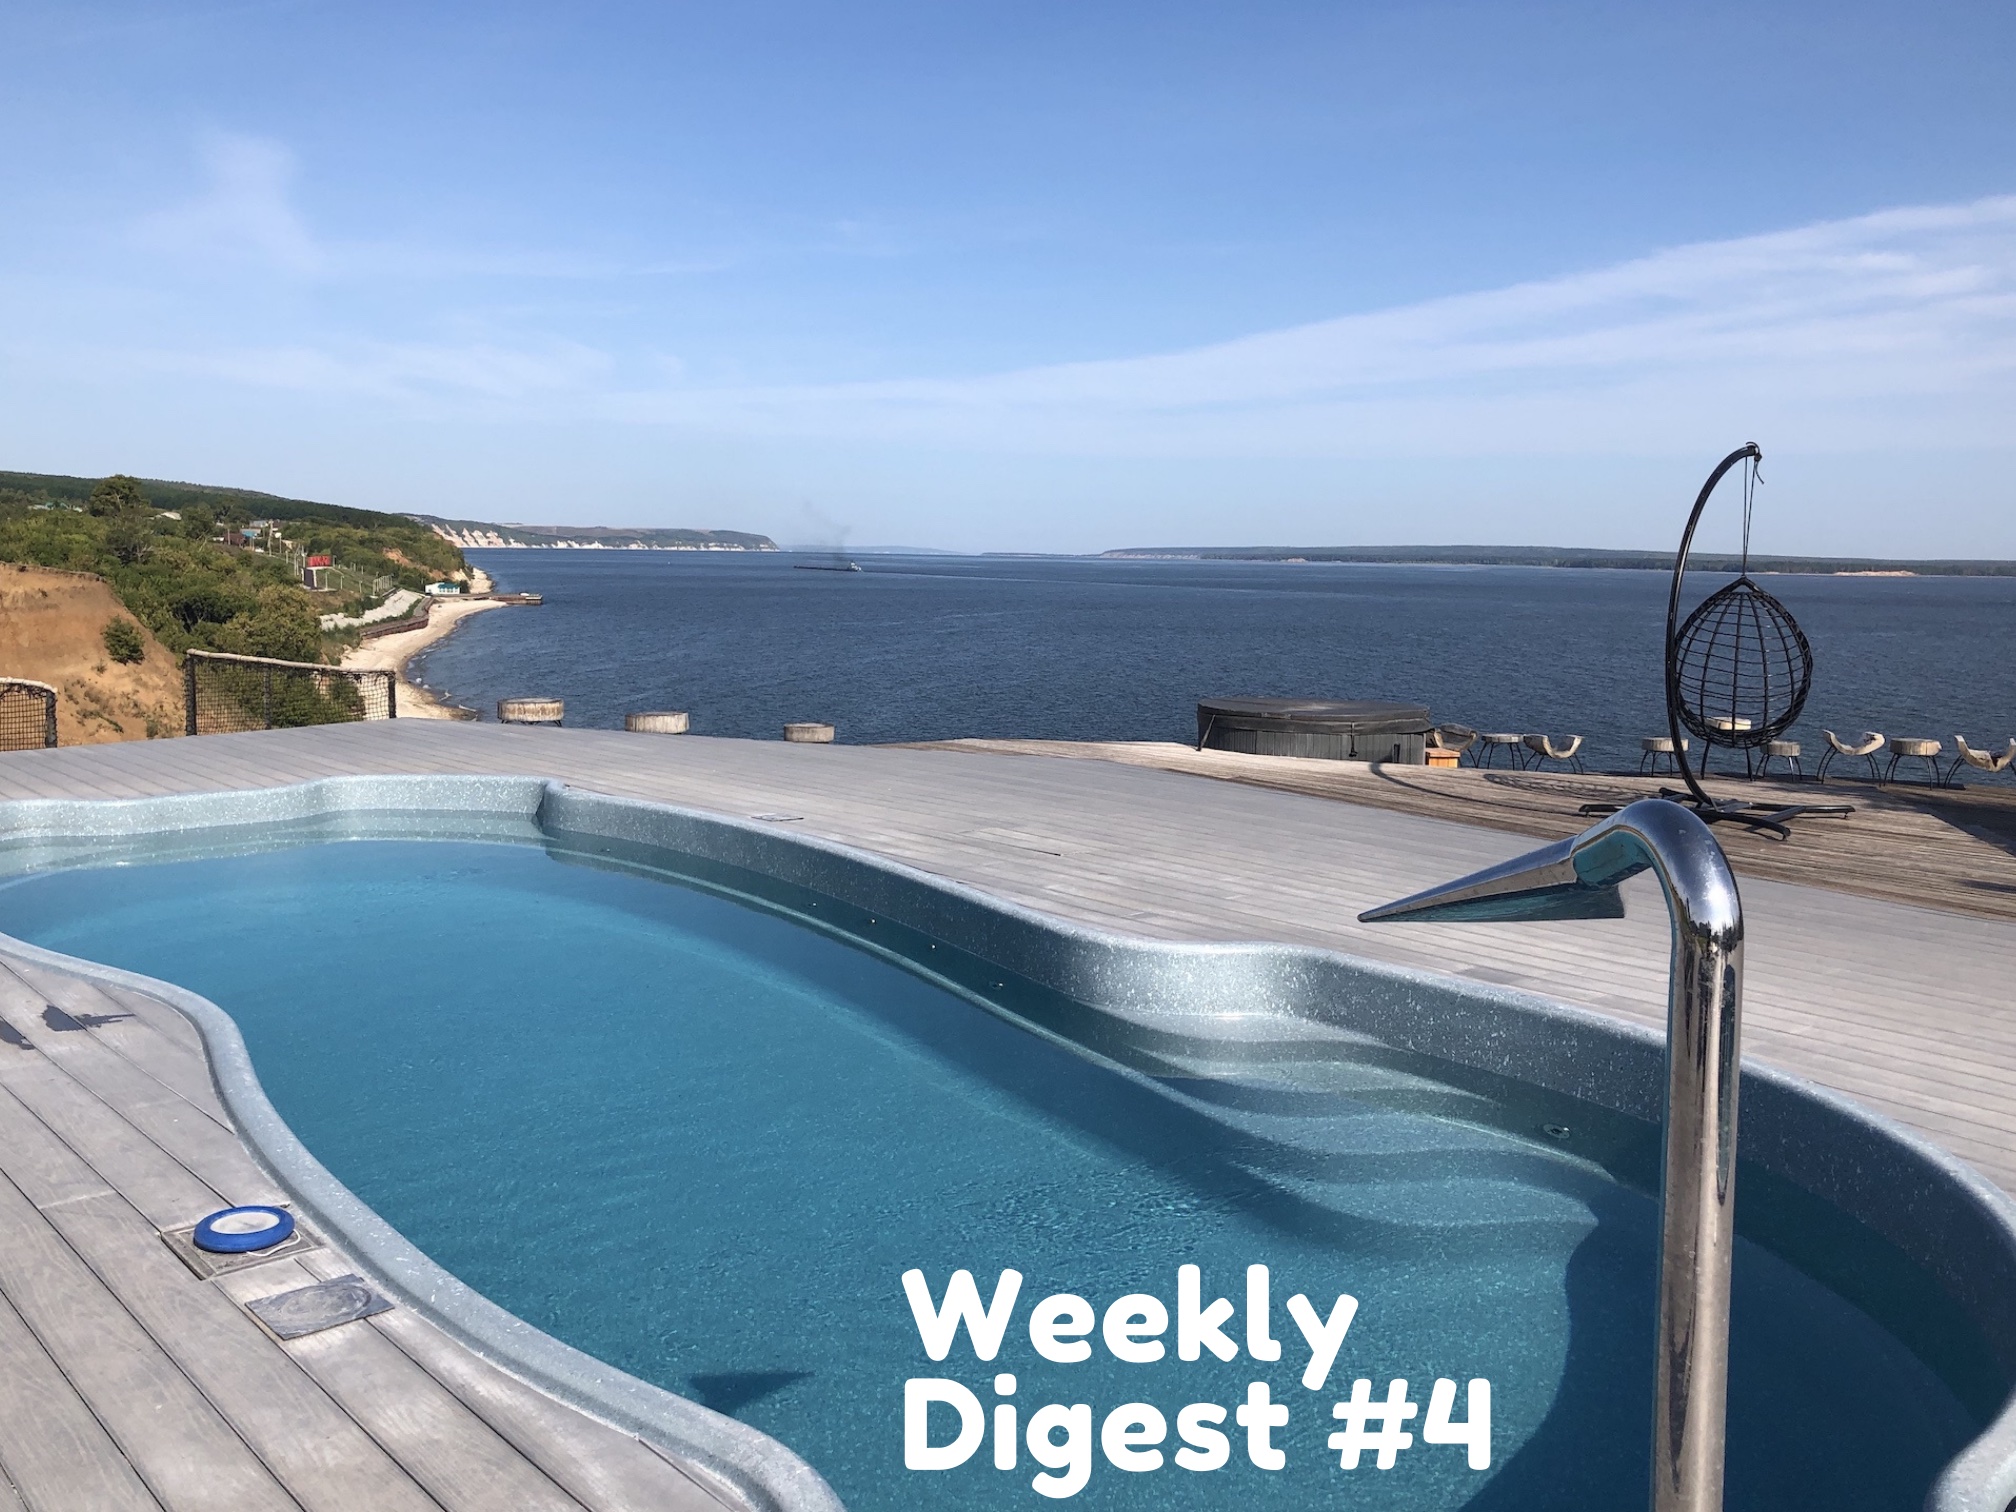 Weekly Digest #4